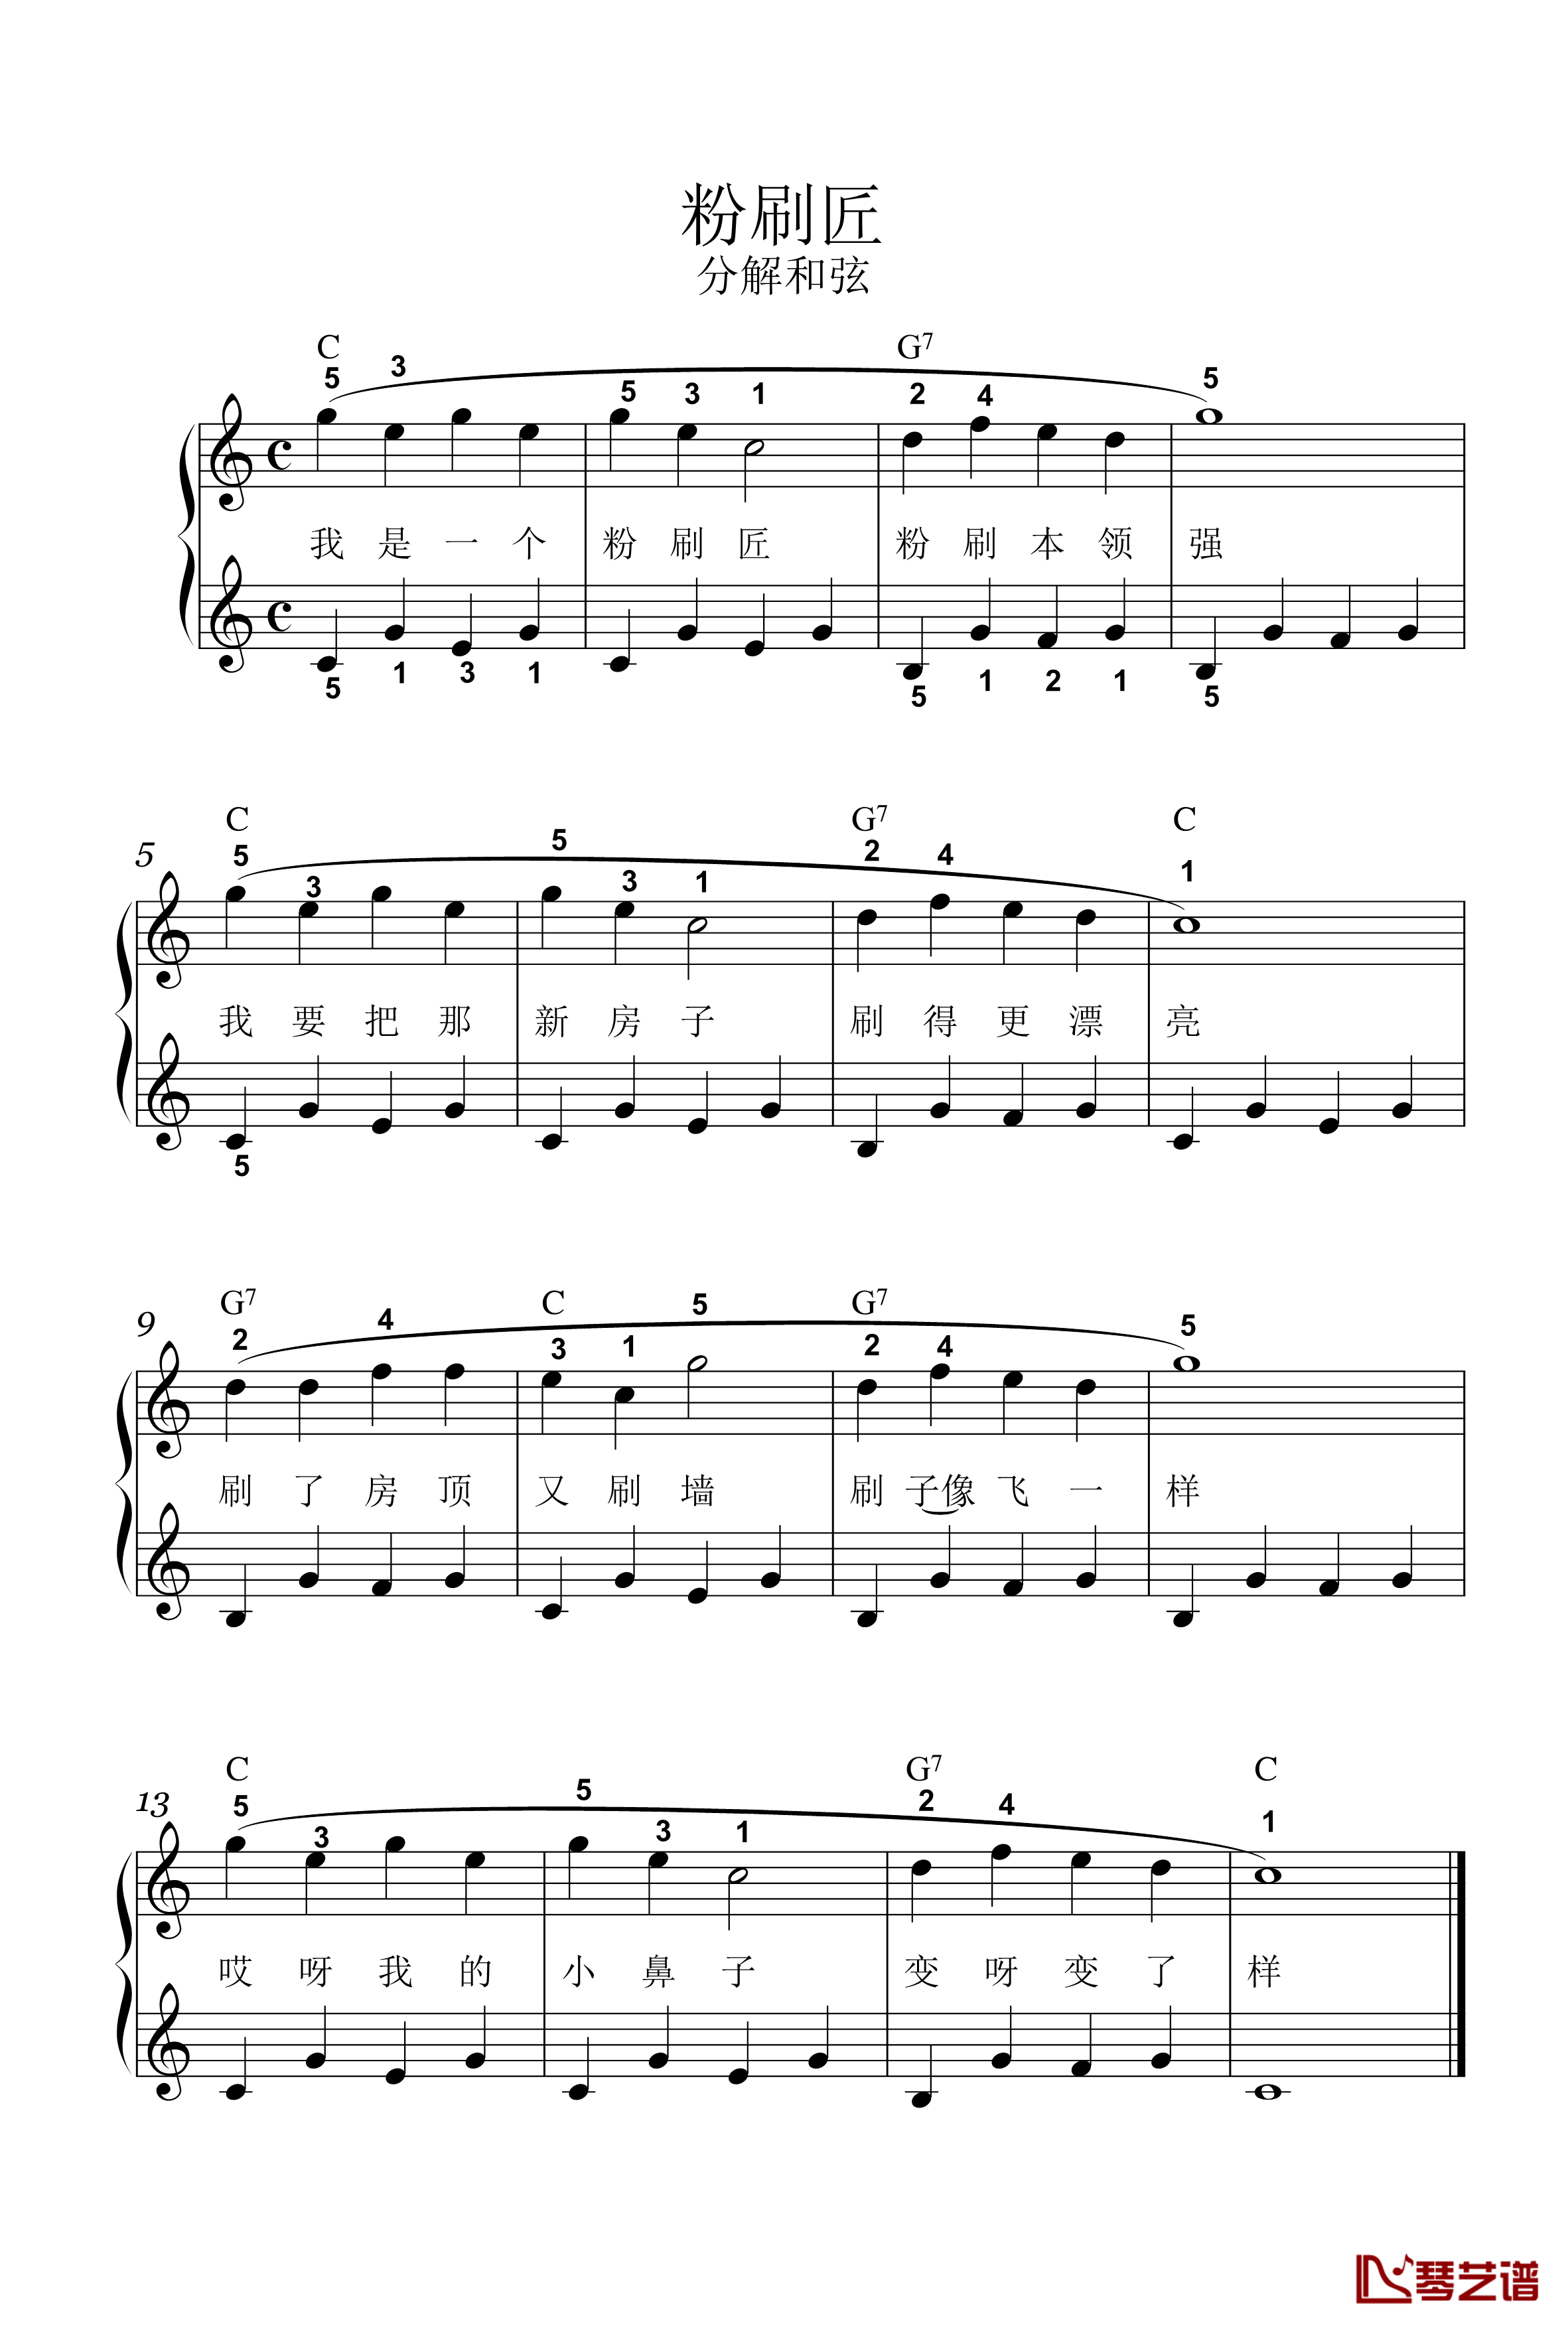 粉刷匠钢琴谱-C-分解和弦-儿童歌曲1